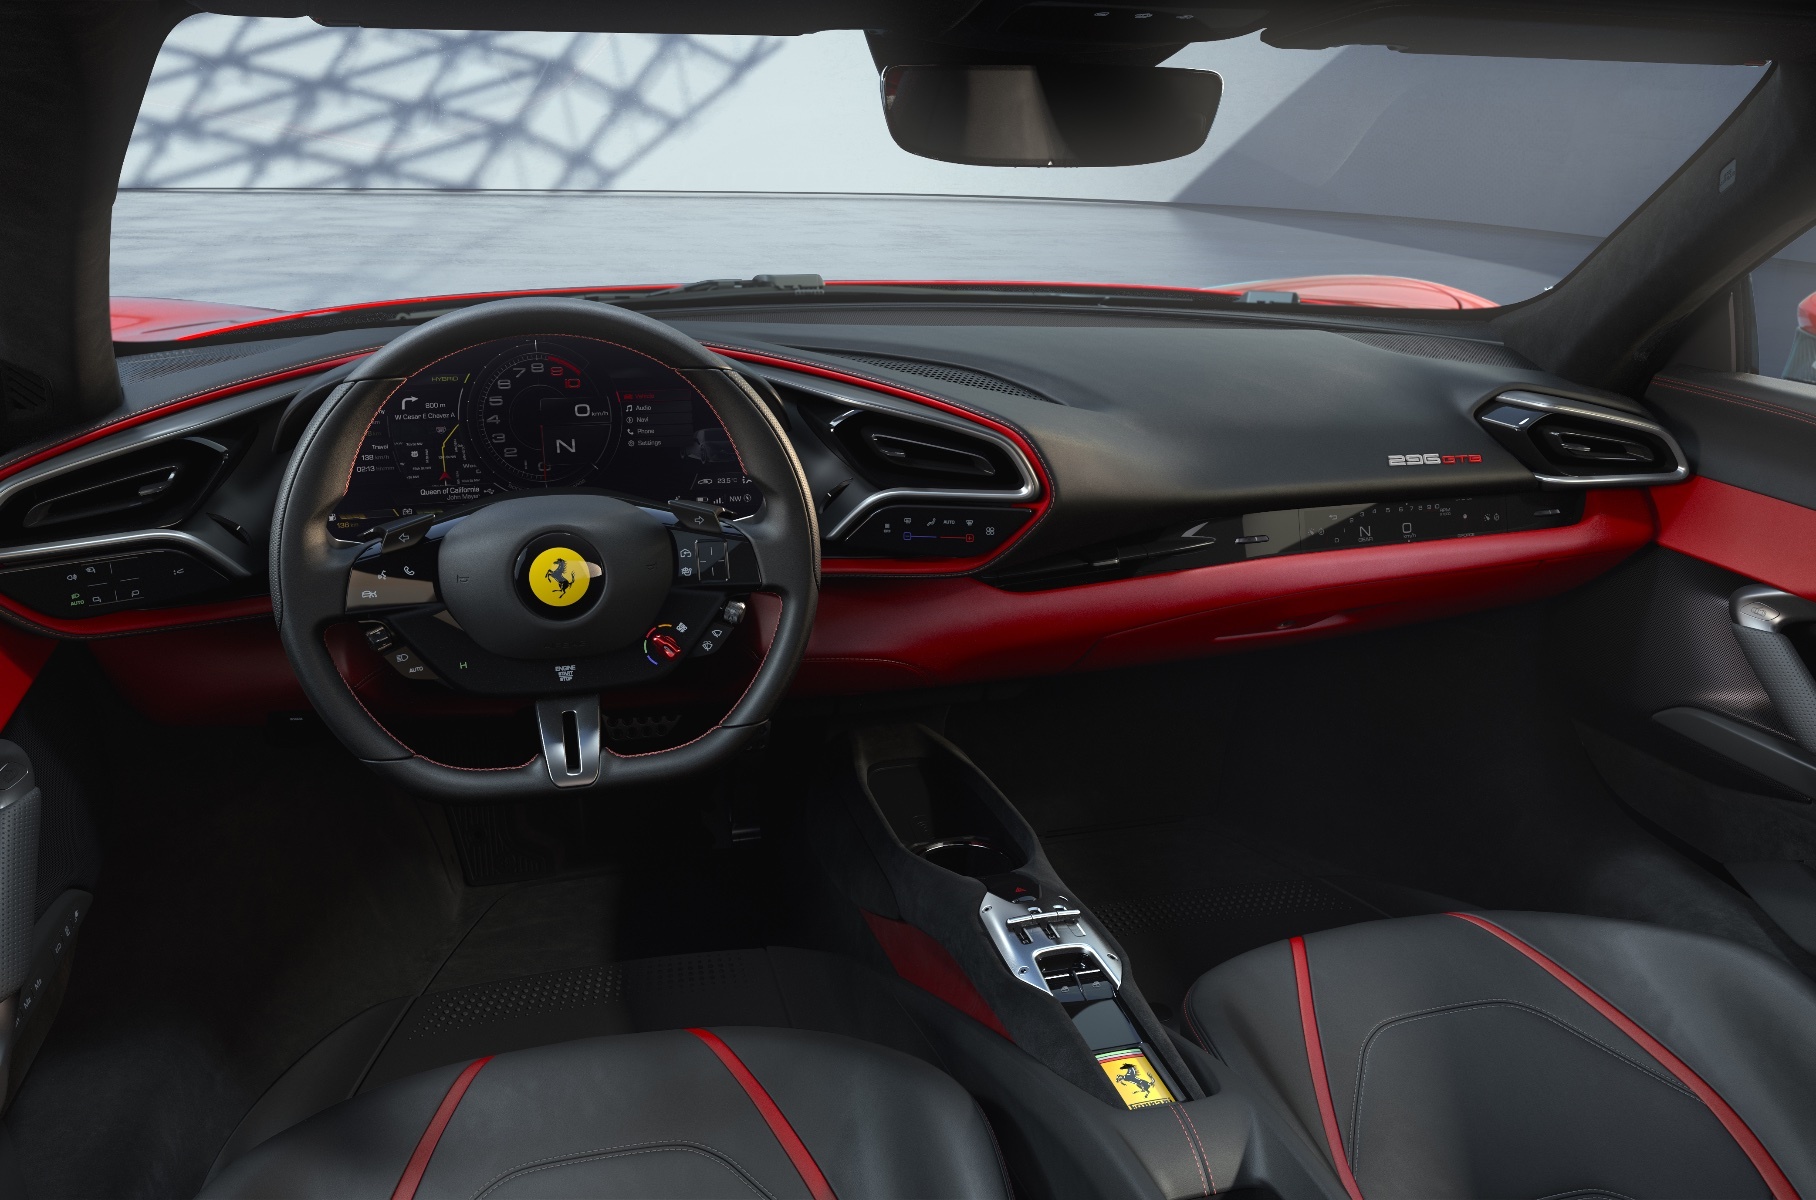 Ferrari представила первый дорожный суперкар с двигателем V6